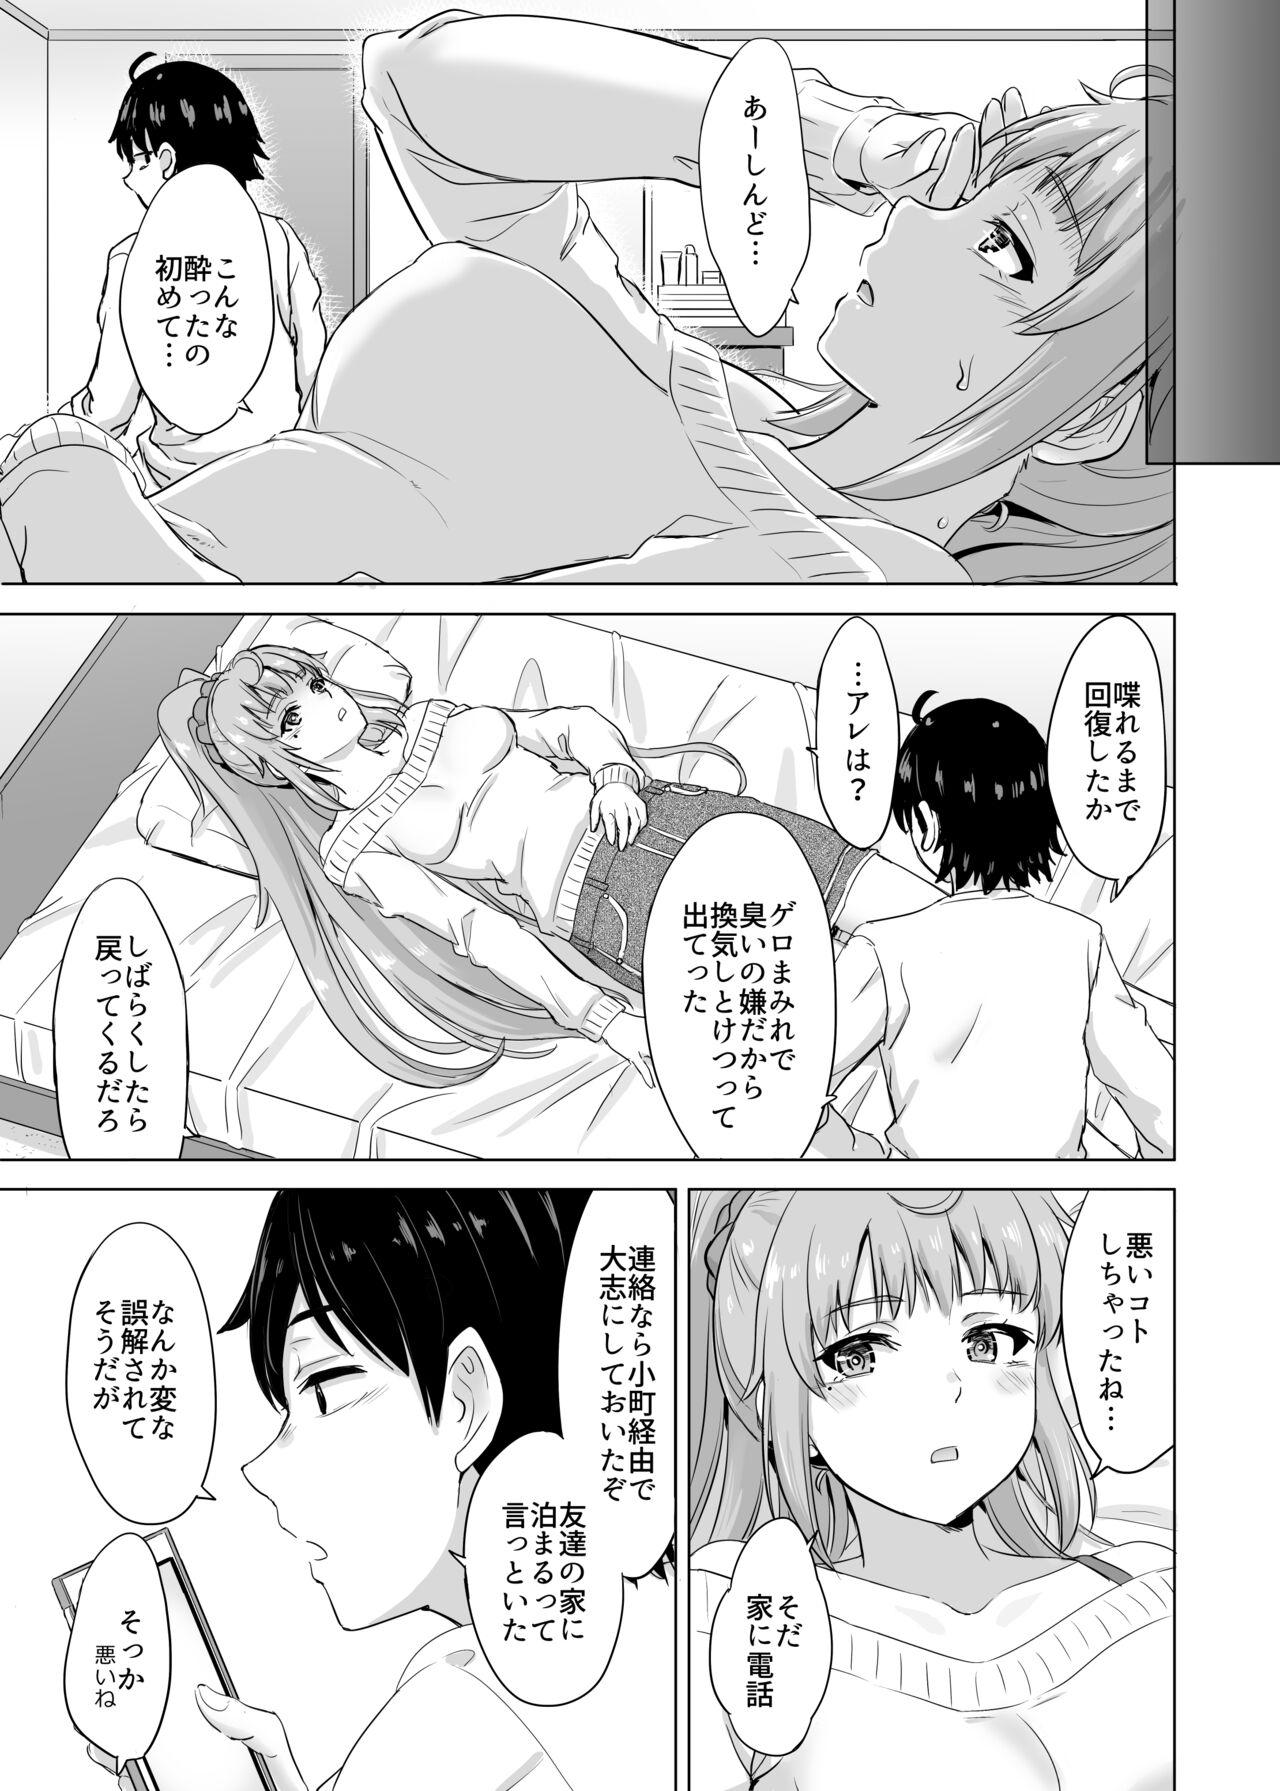 Camshow Ashi-san Saki Saki Manga - Yahari ore no seishun love come wa machigatteiru Rope - Page 3